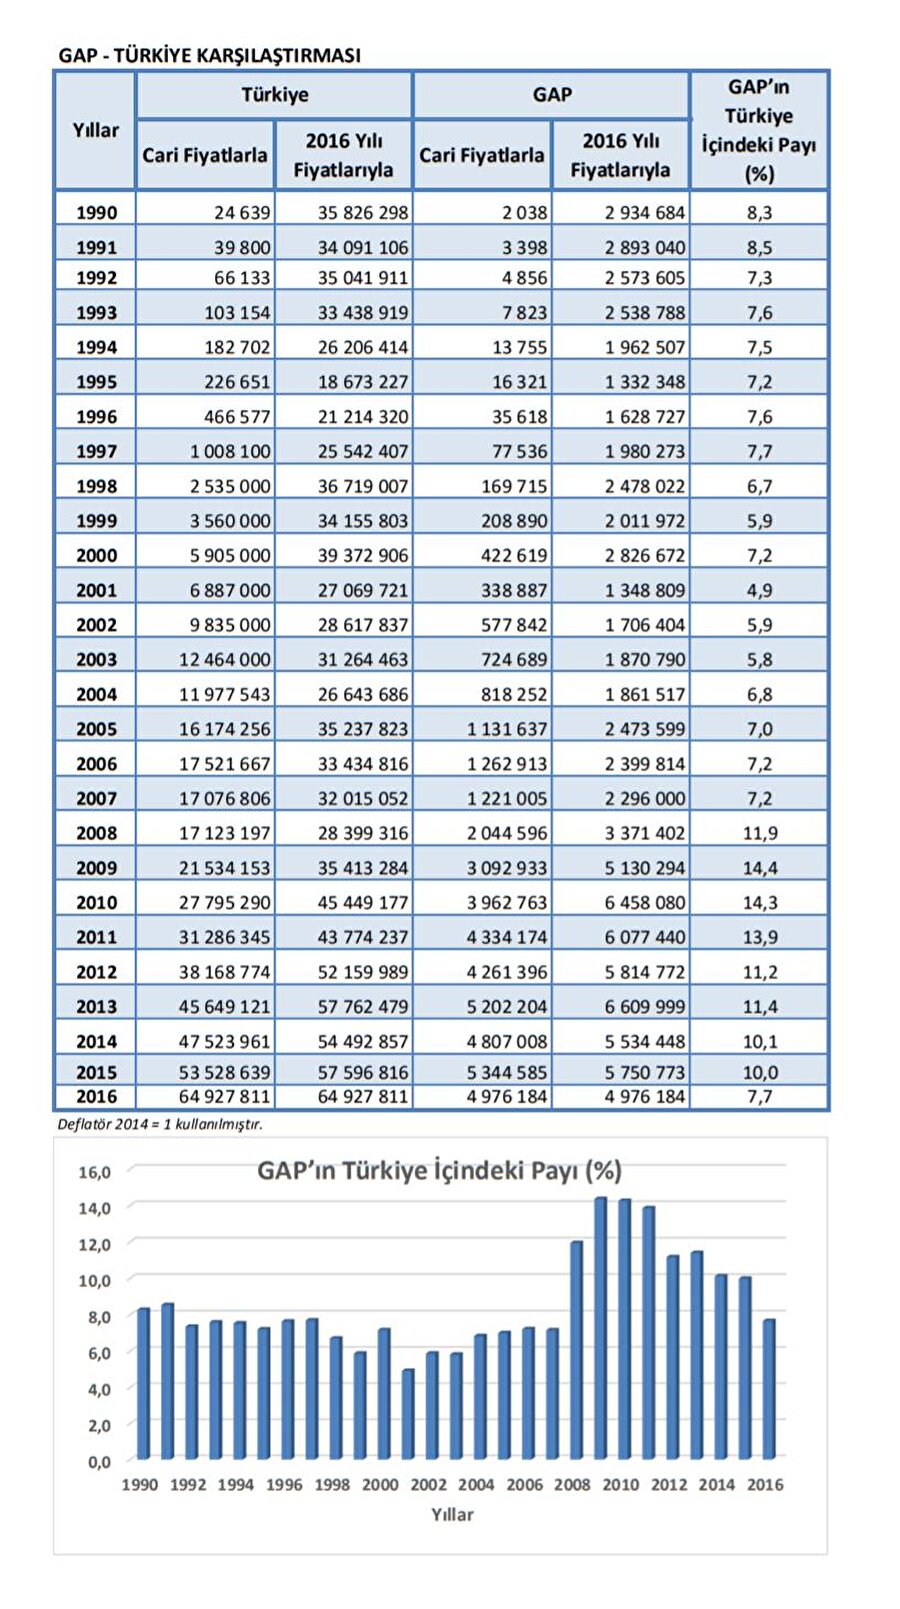 GAP'ın maliyeti ne kadar?

                                    
                                    
                                    
                                    GAP'ın yıllara göre maliyet tablosu.
                                
                                
                                
                                